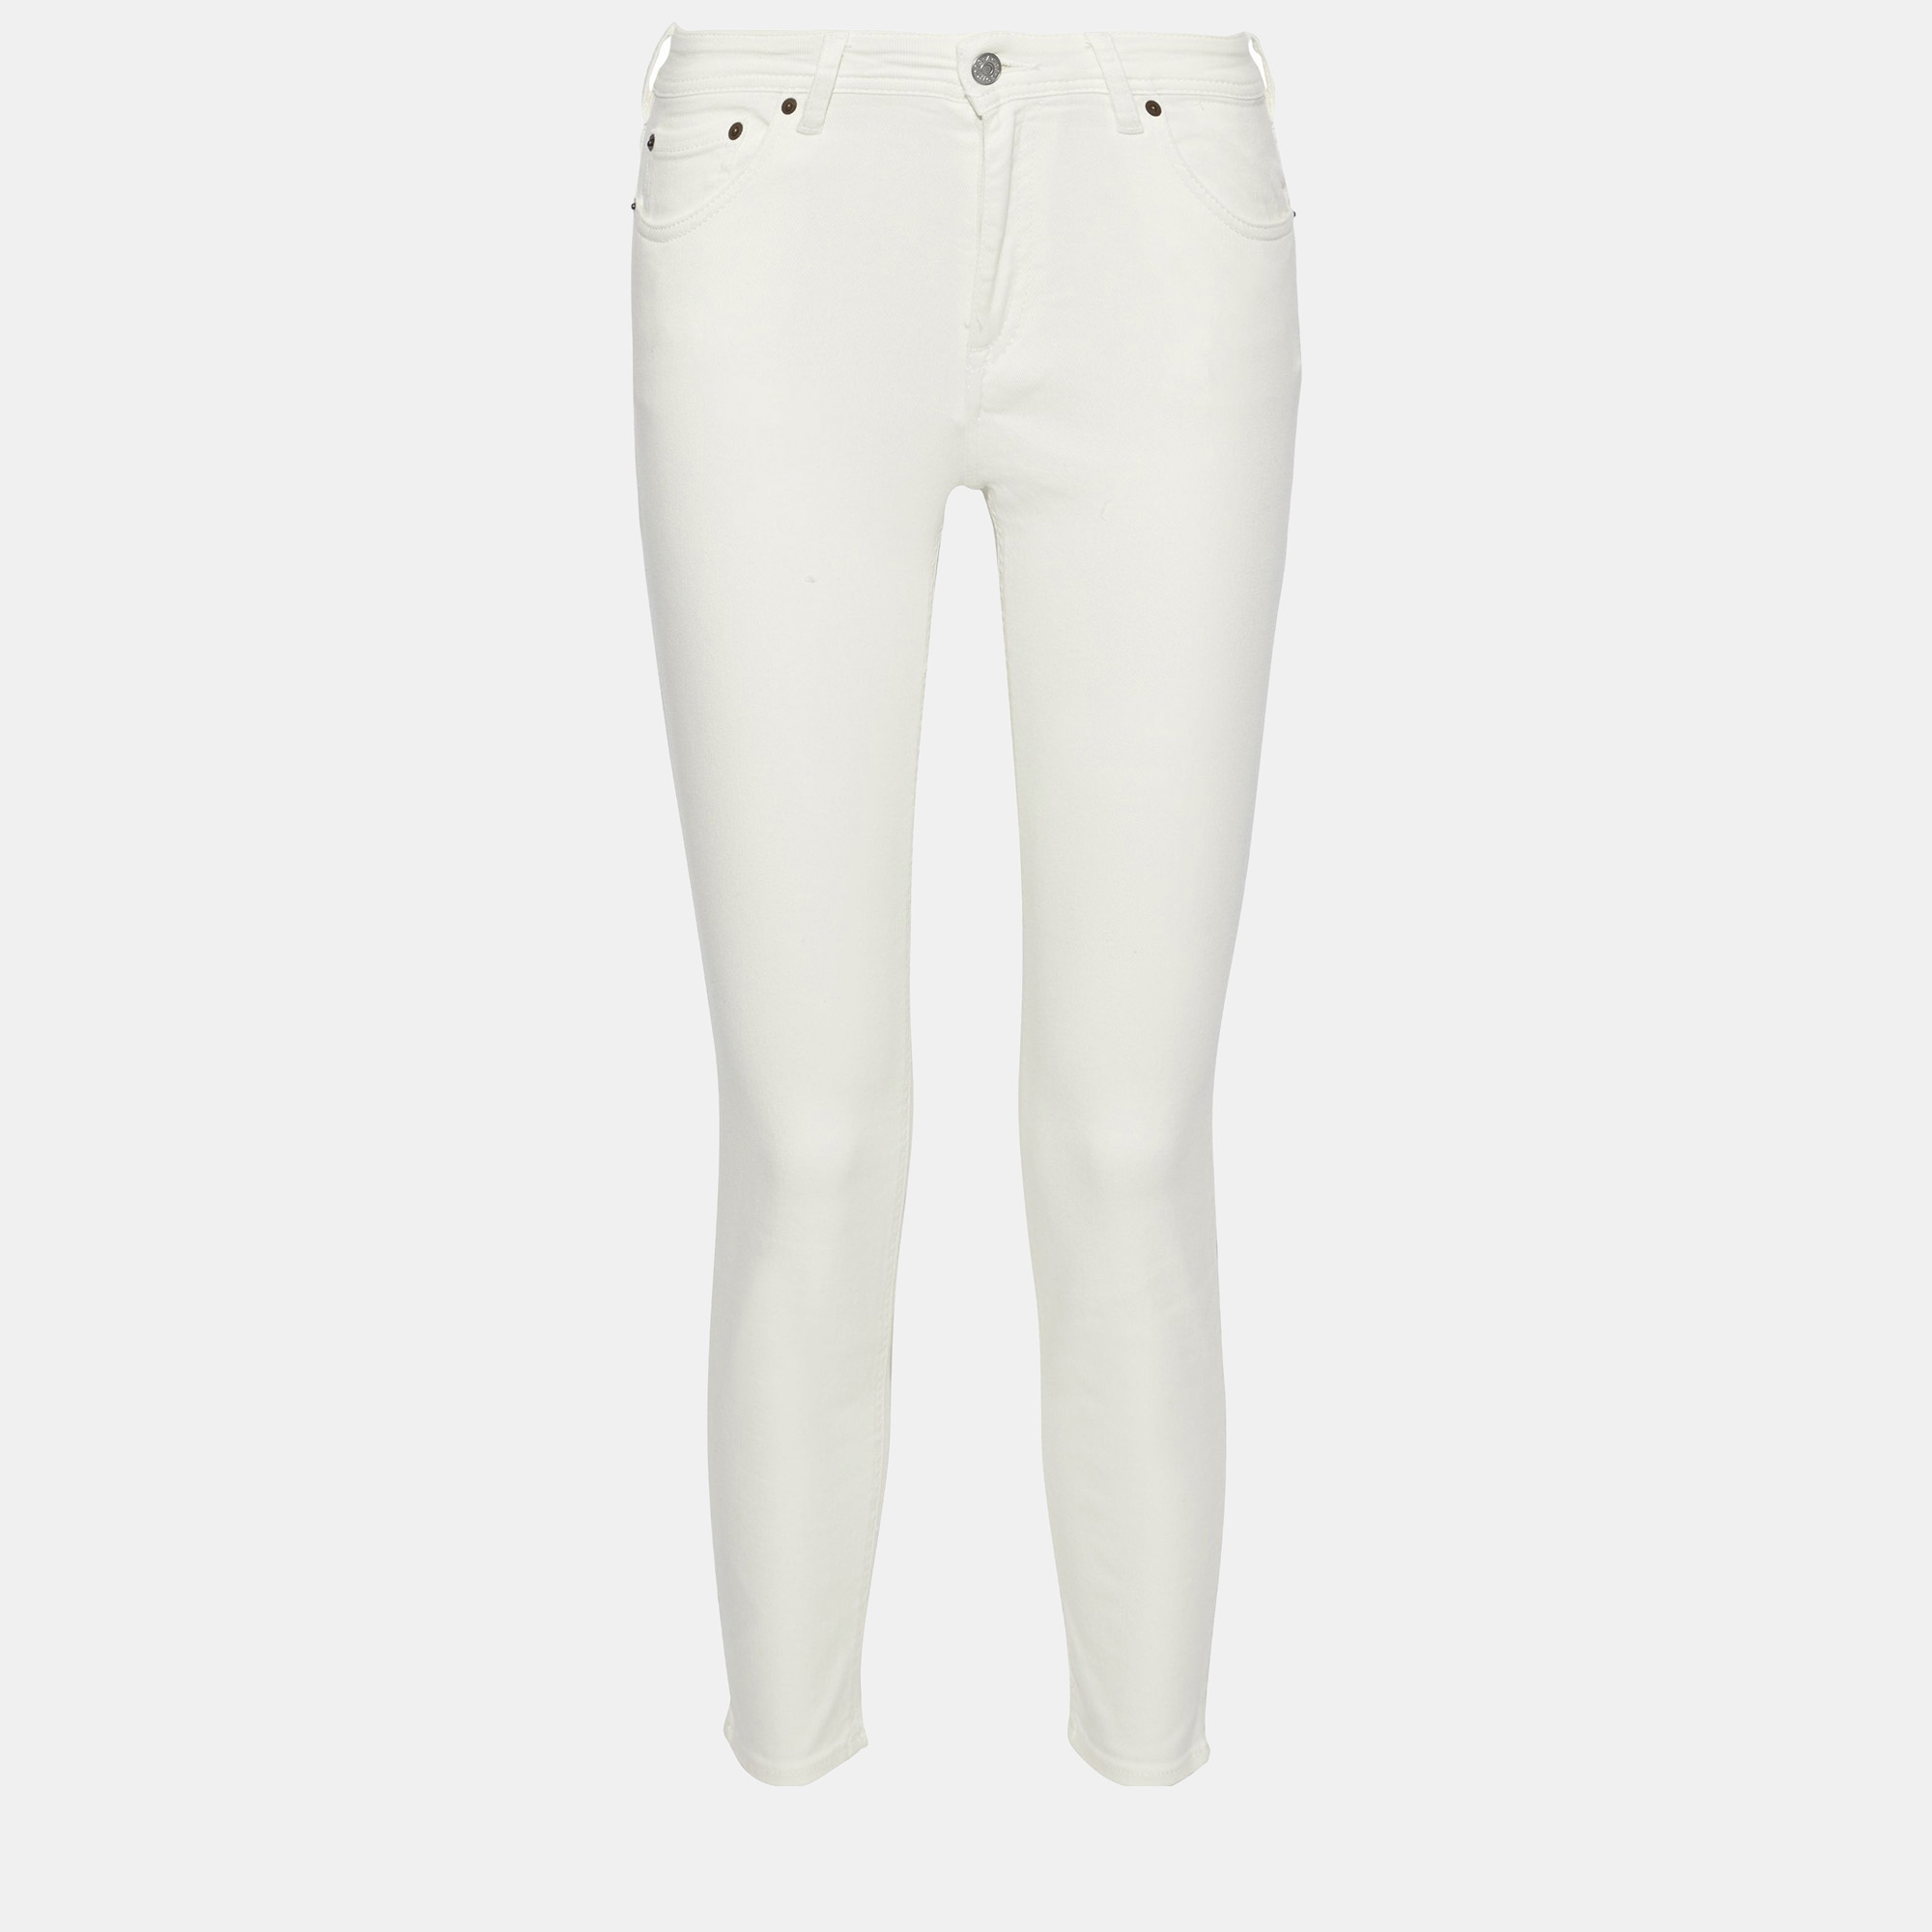 Acne studios bla konst white cotton skinny leg jeans s (26w-32l)